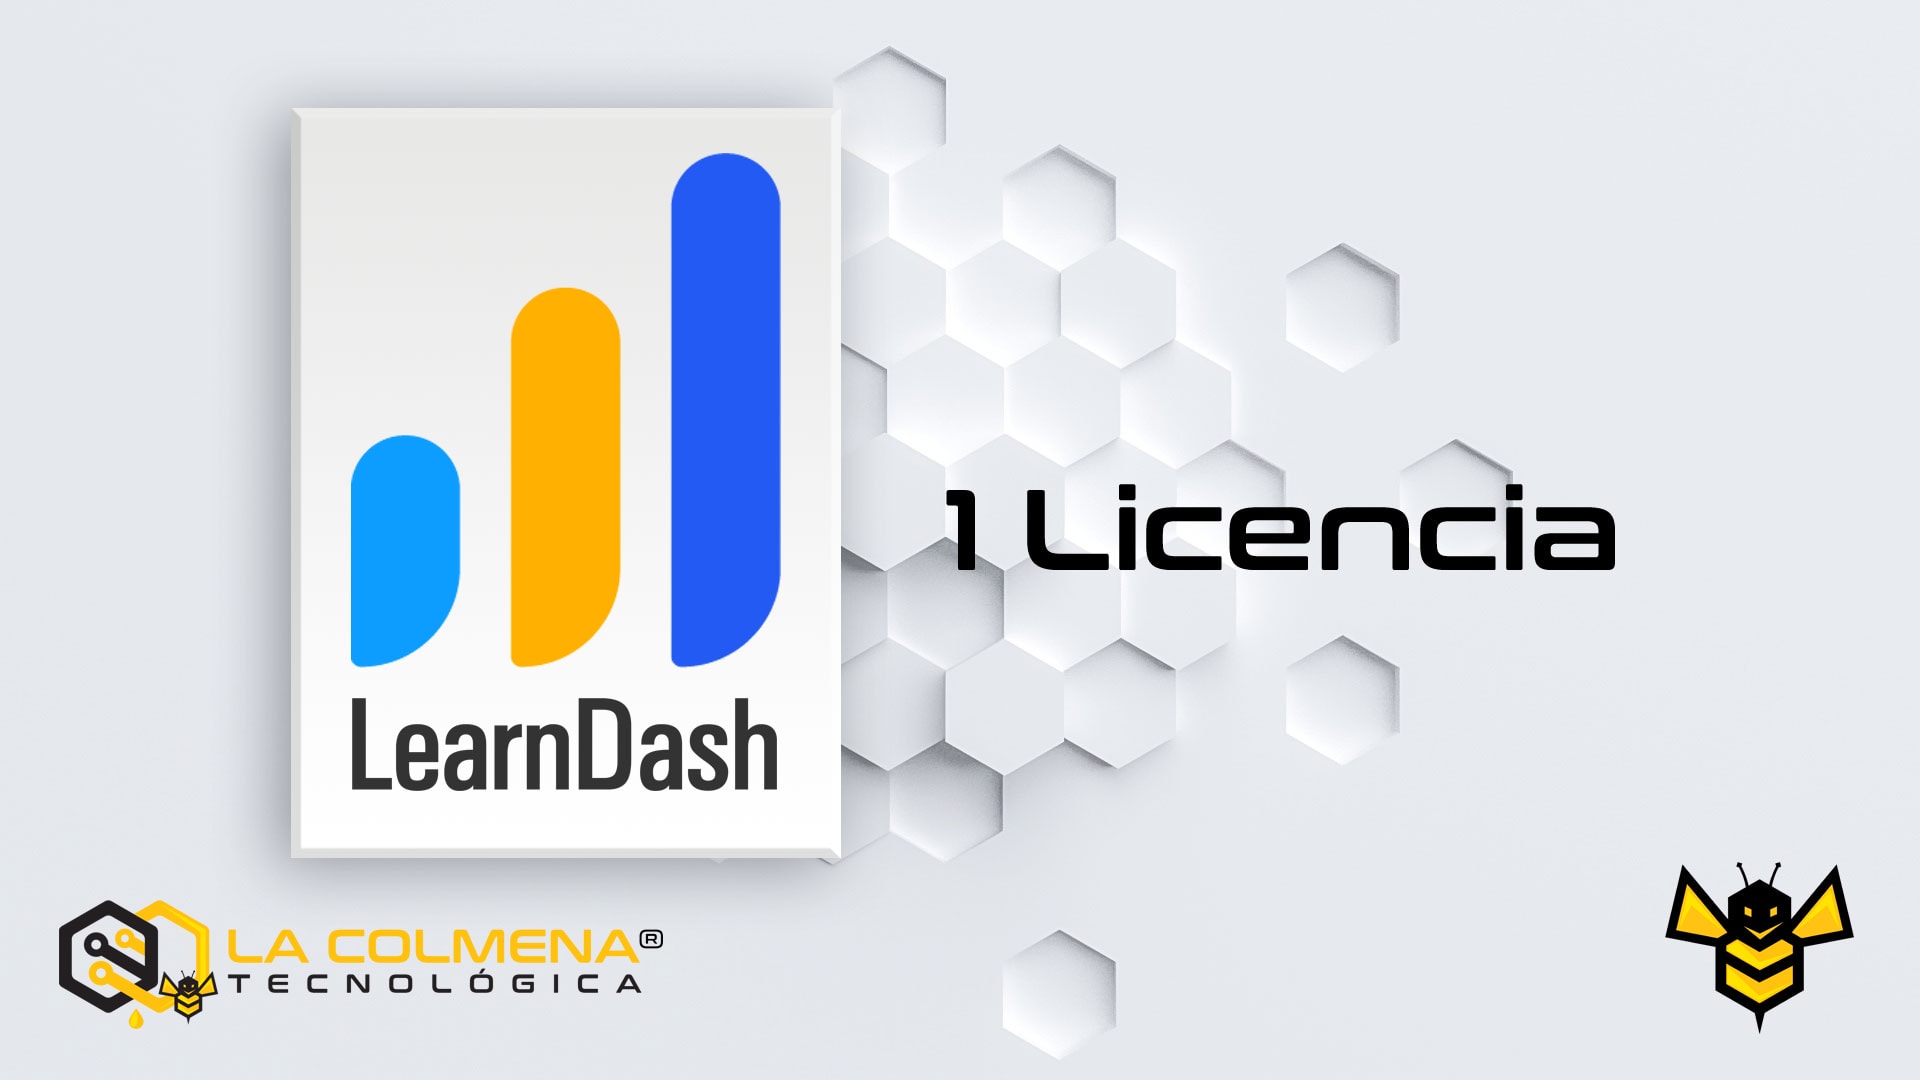 1 Licencia de LearnDash